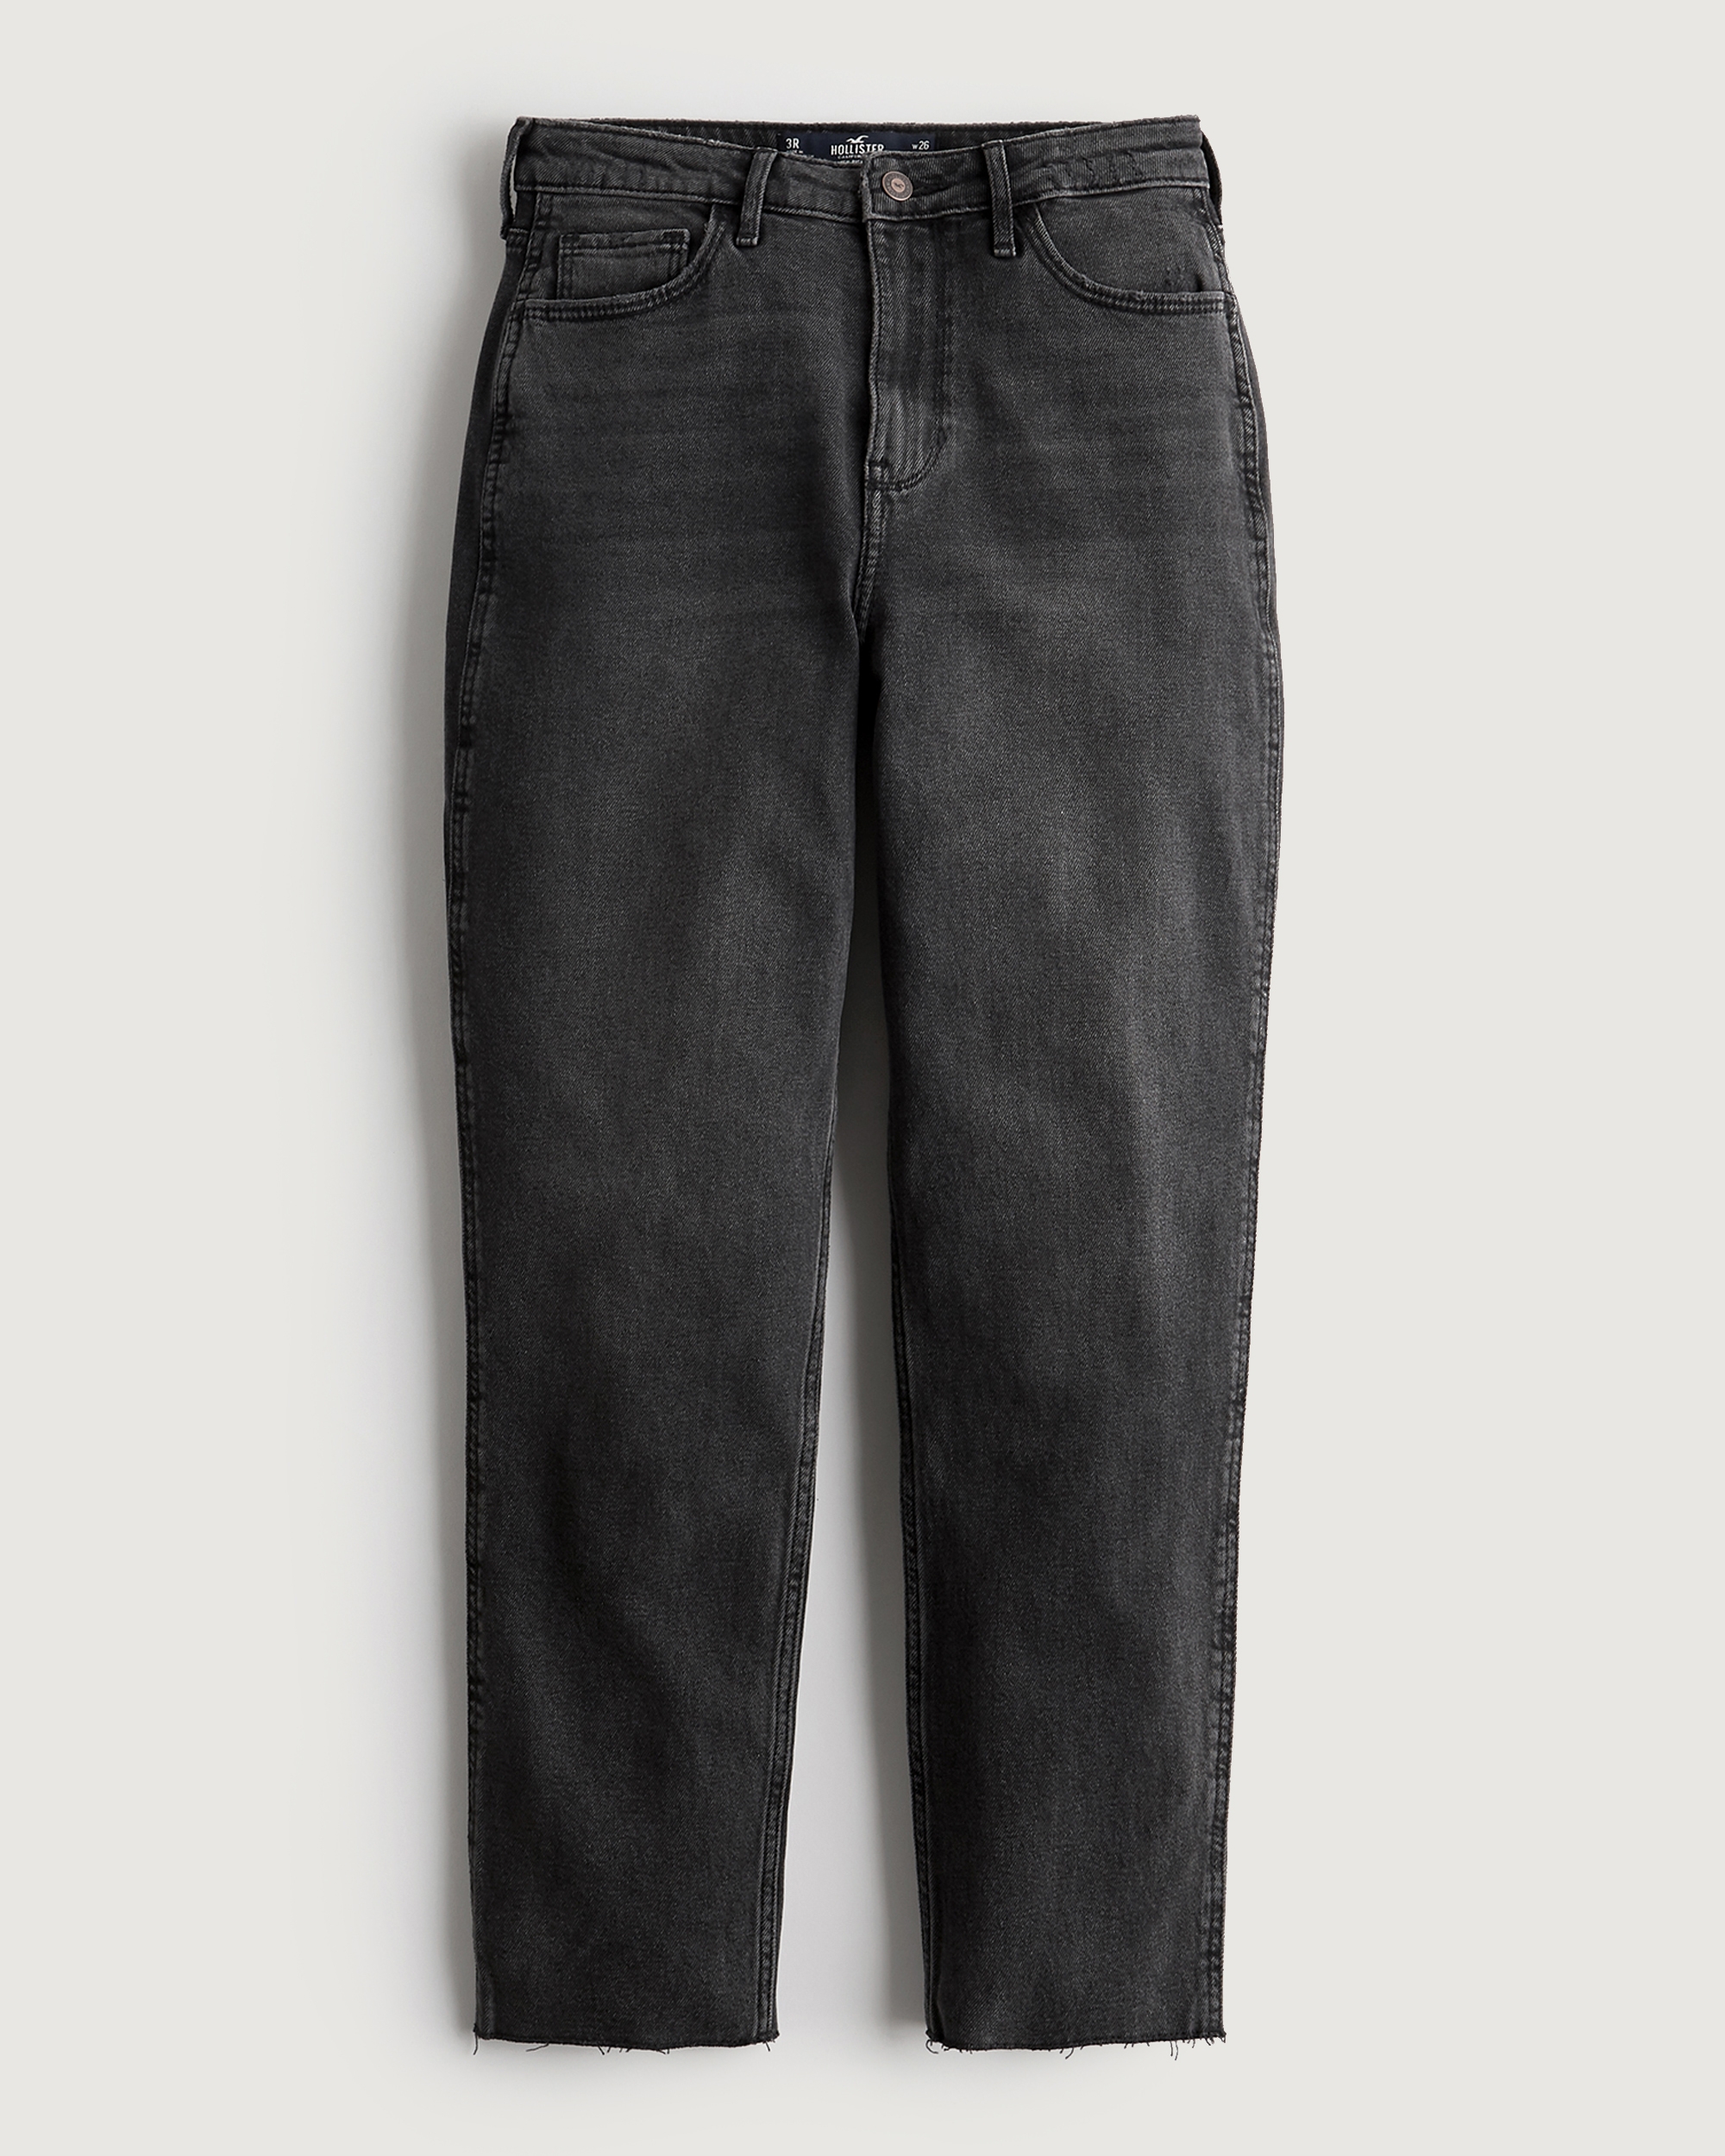 hollister jeans online